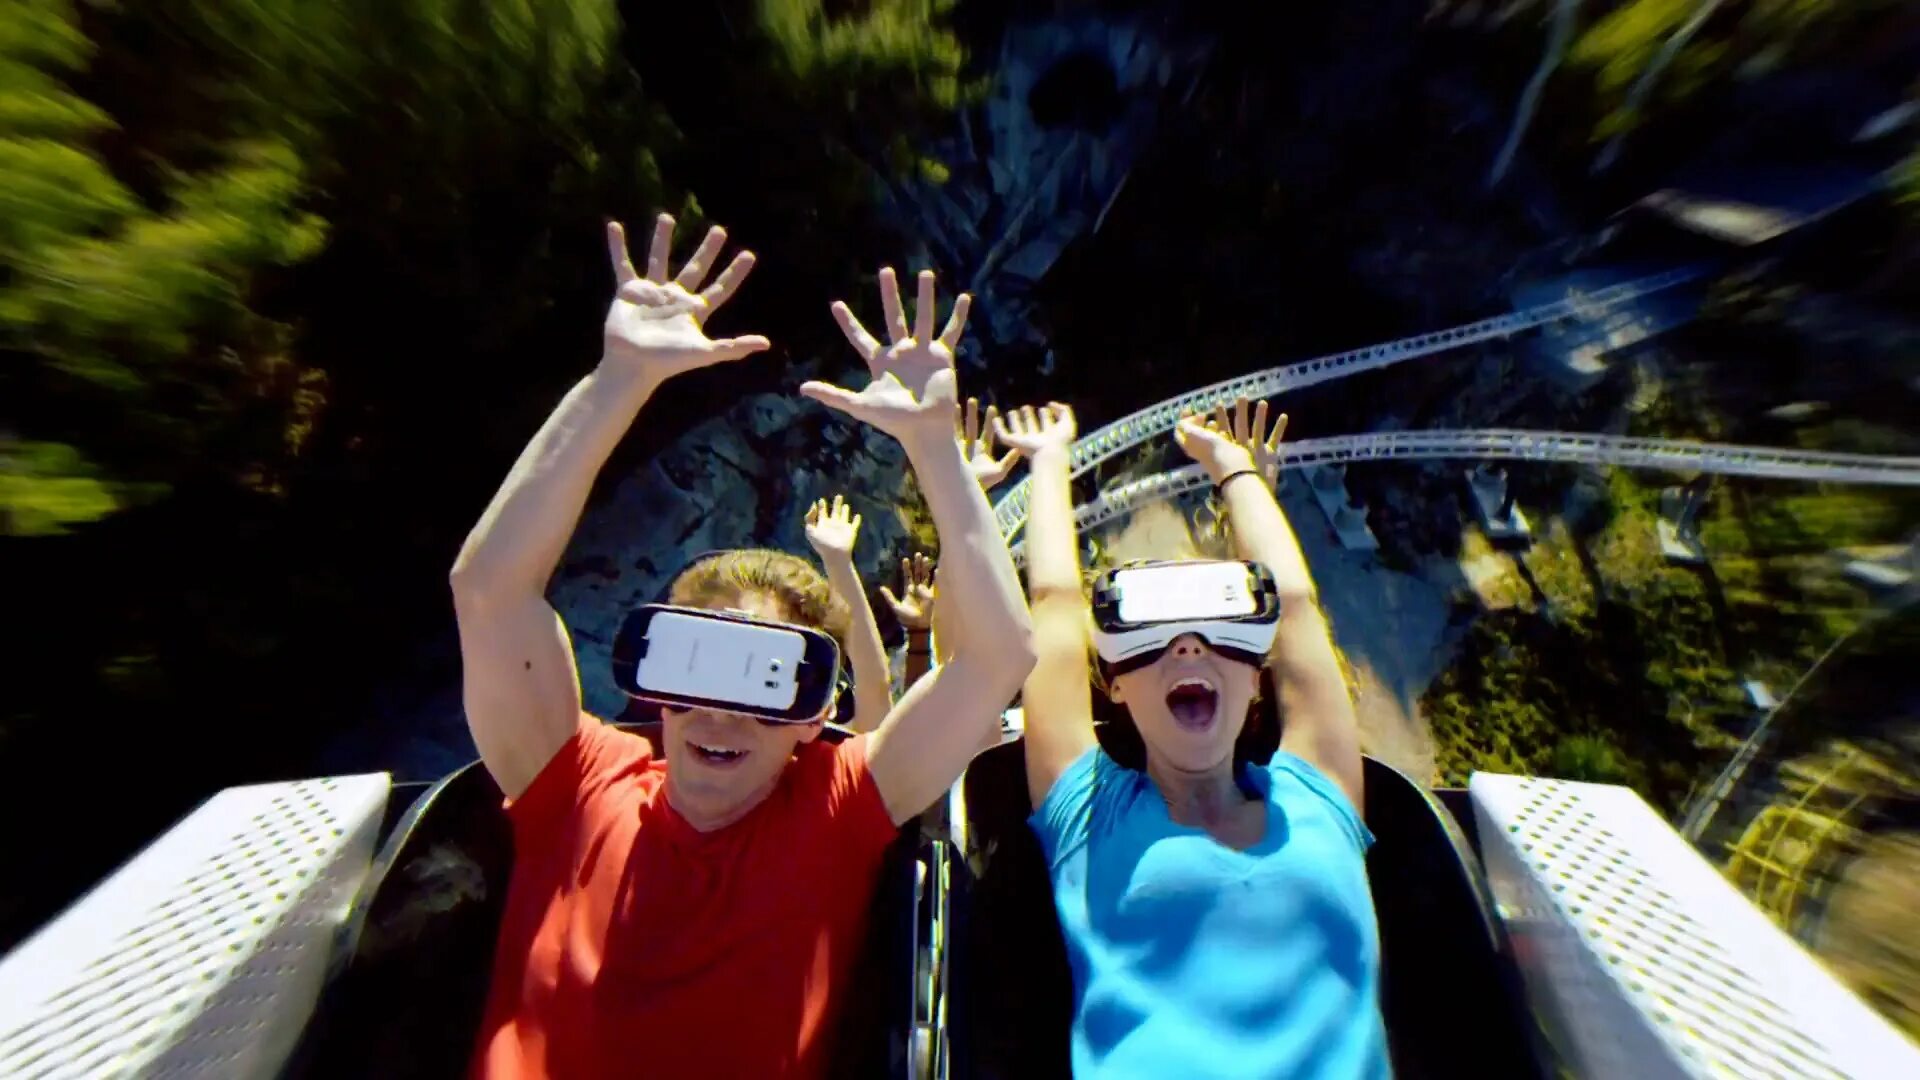 Vr riding. Аттракцион Orbital 360 VR. Американские горки виар очки. Виртуальная реальность дети. Виртуальная реальность американские горки.